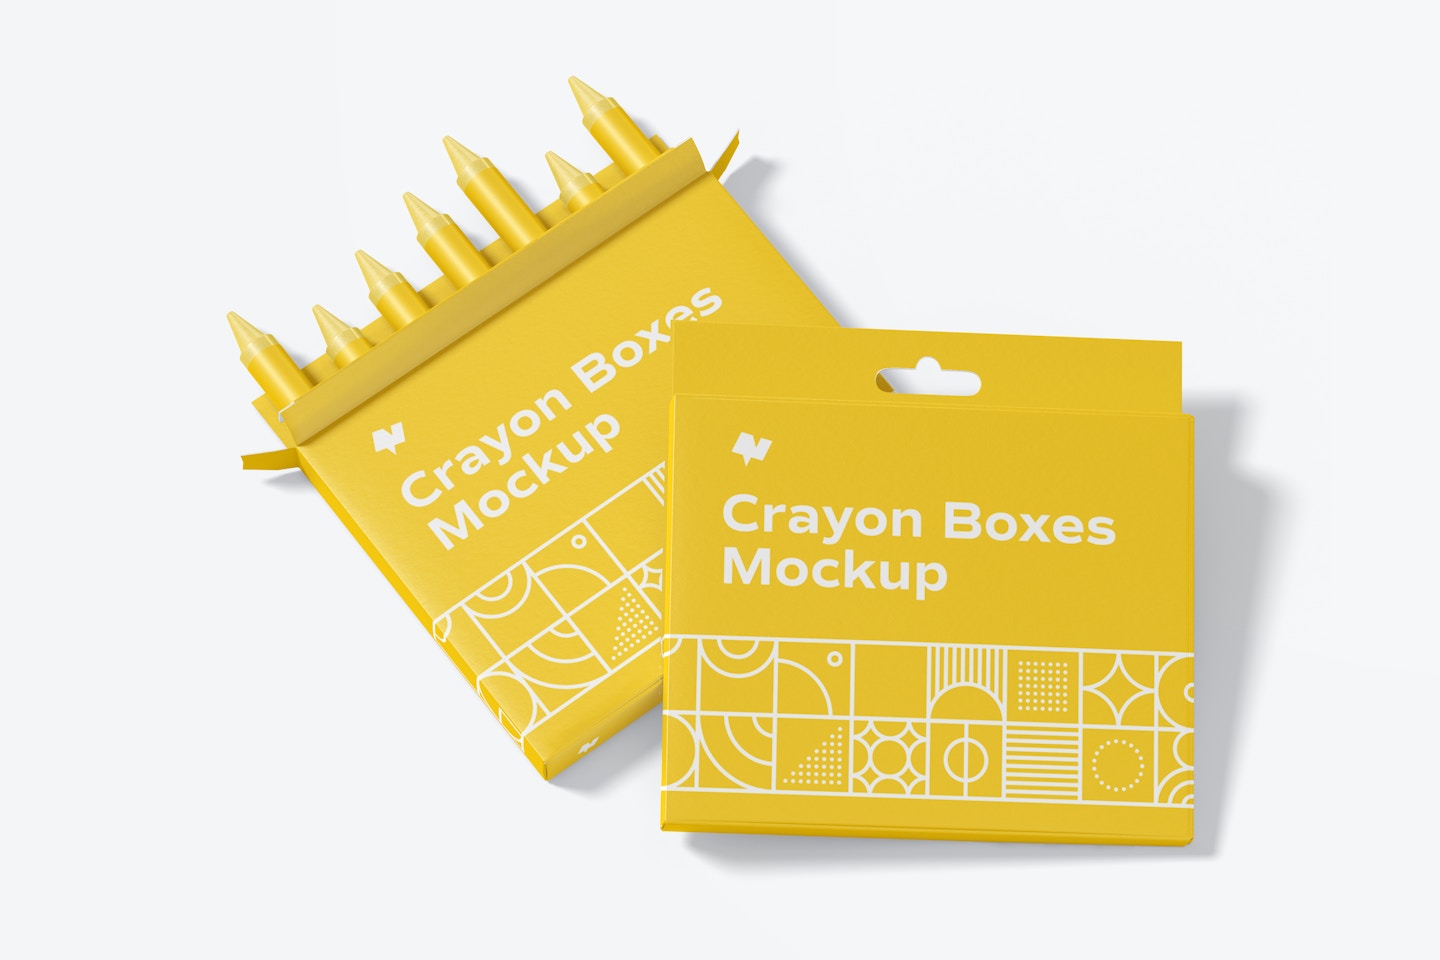 Crayon Box Mockup, Frontal View